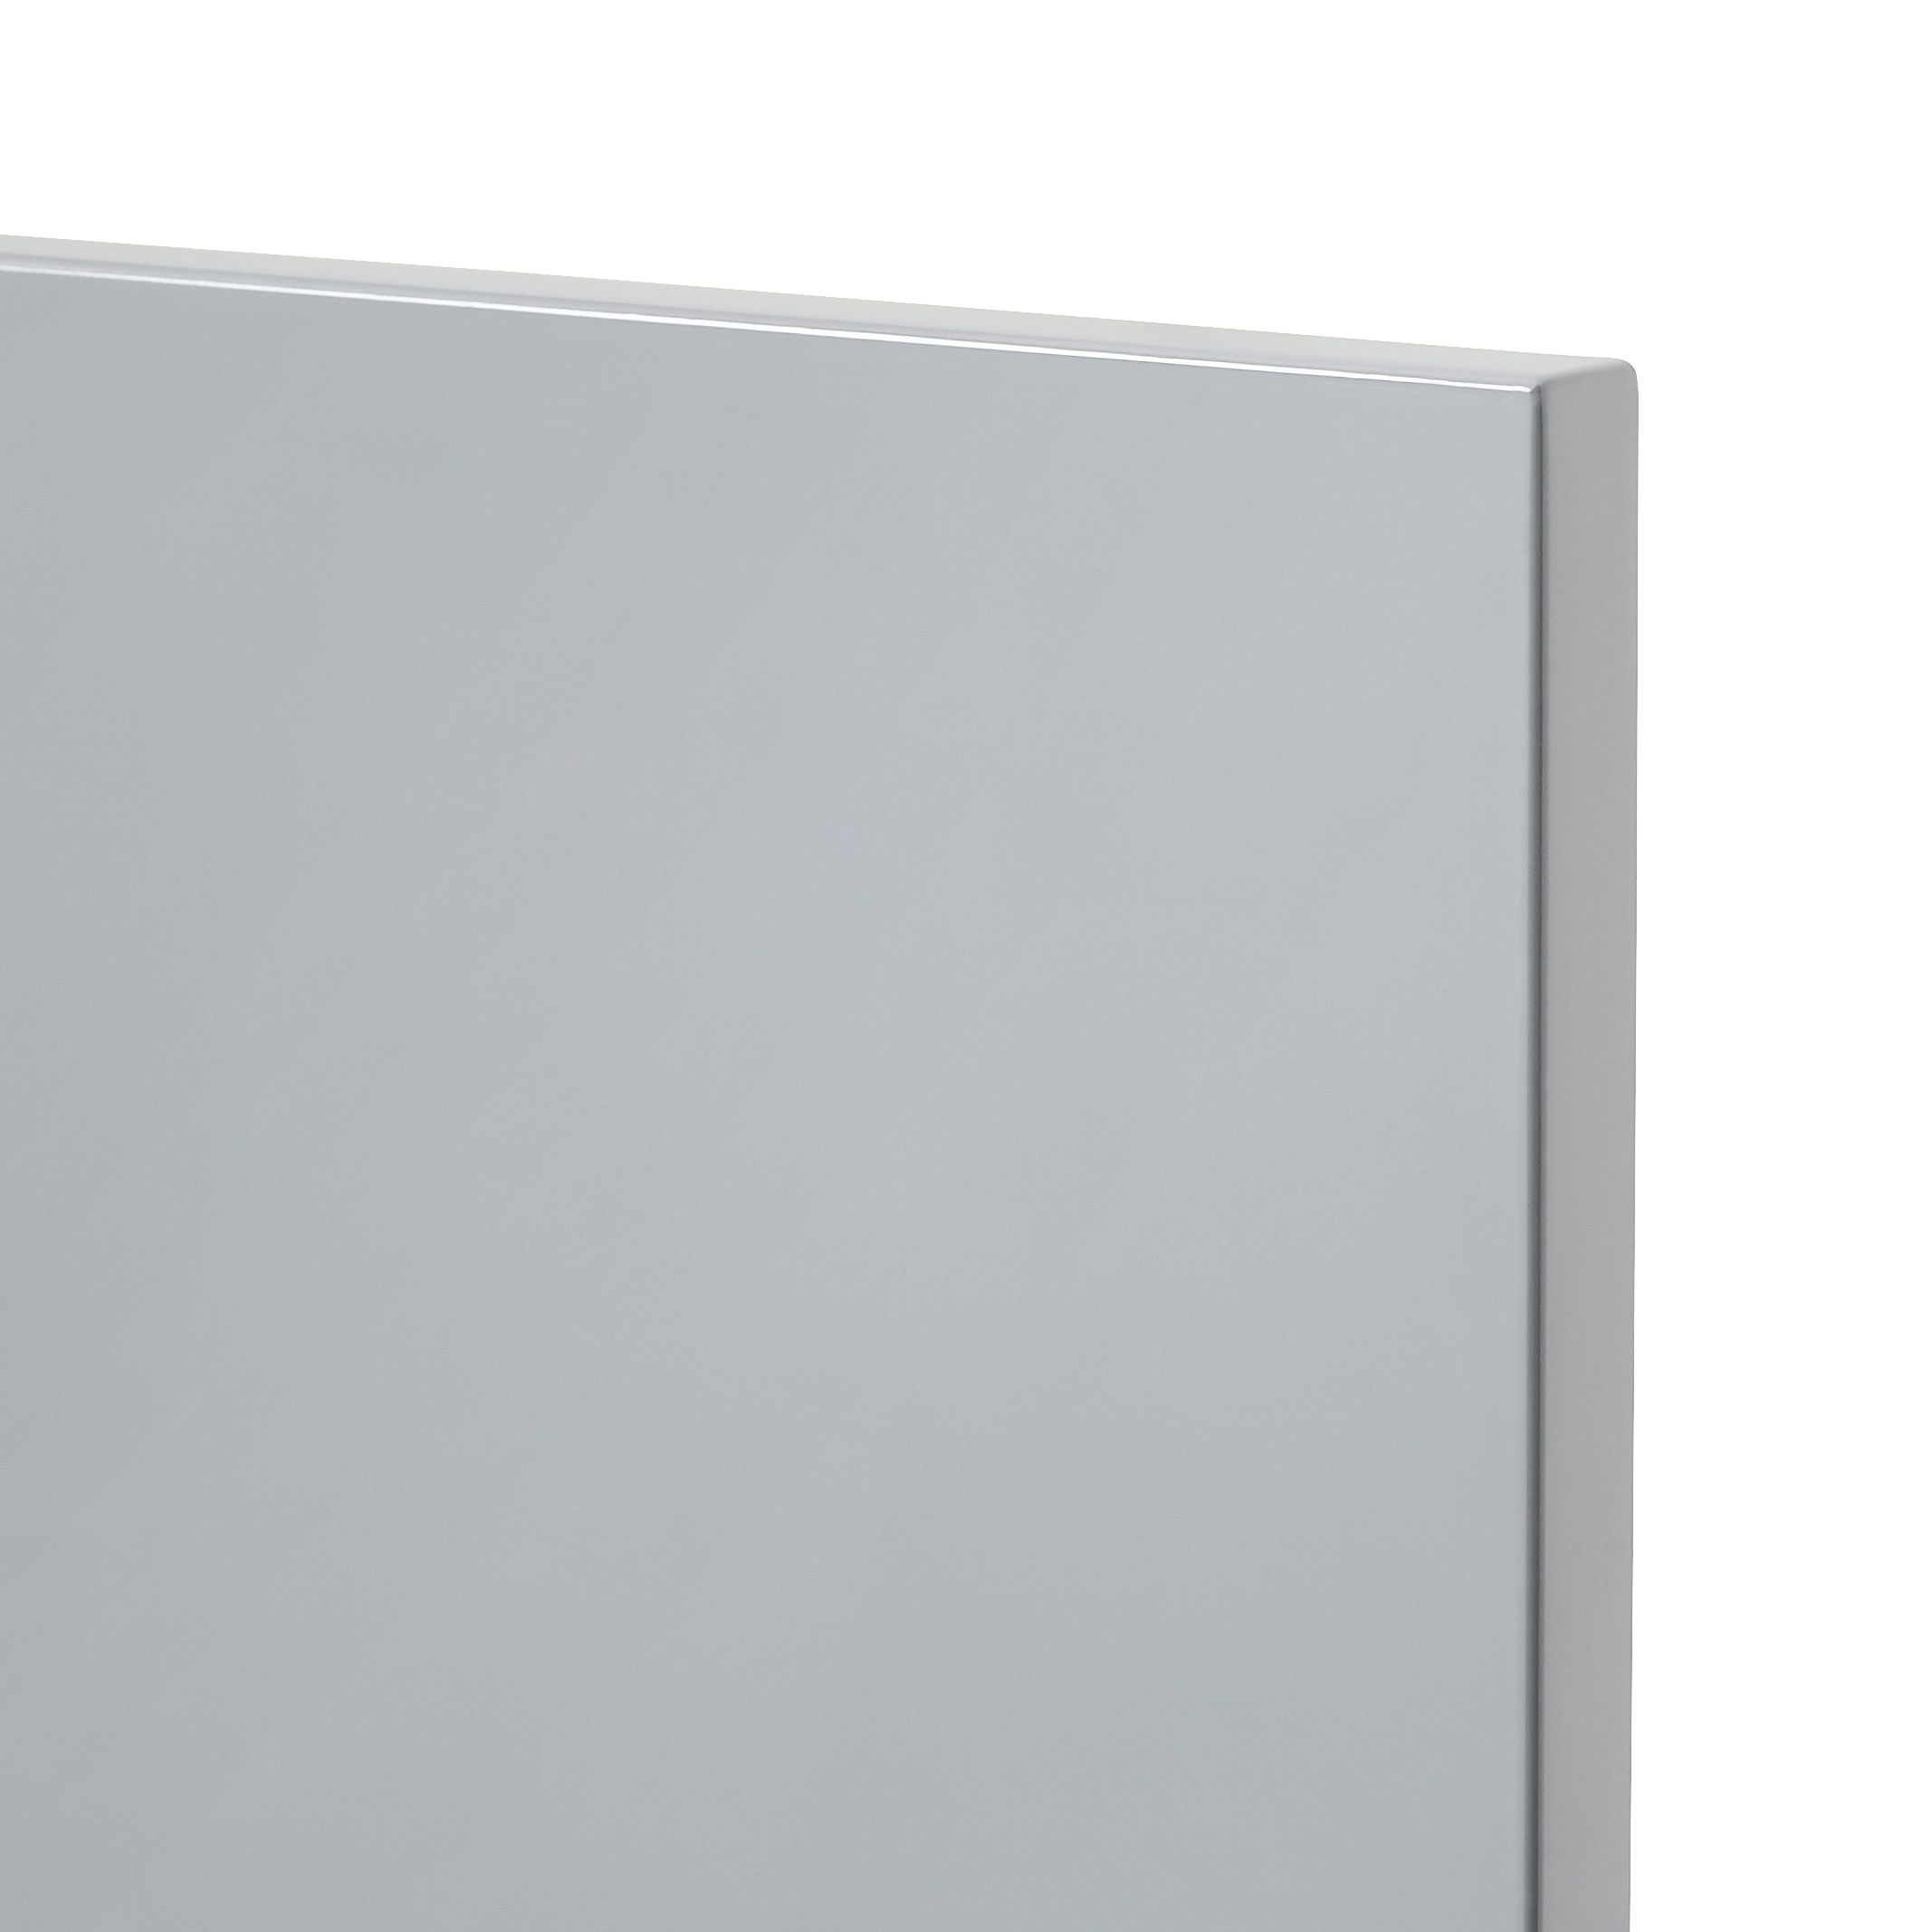 GoodHome Alisma High gloss grey Drawer front, bridging door & bi fold door, (W)800mm (H)356mm (T)18mm